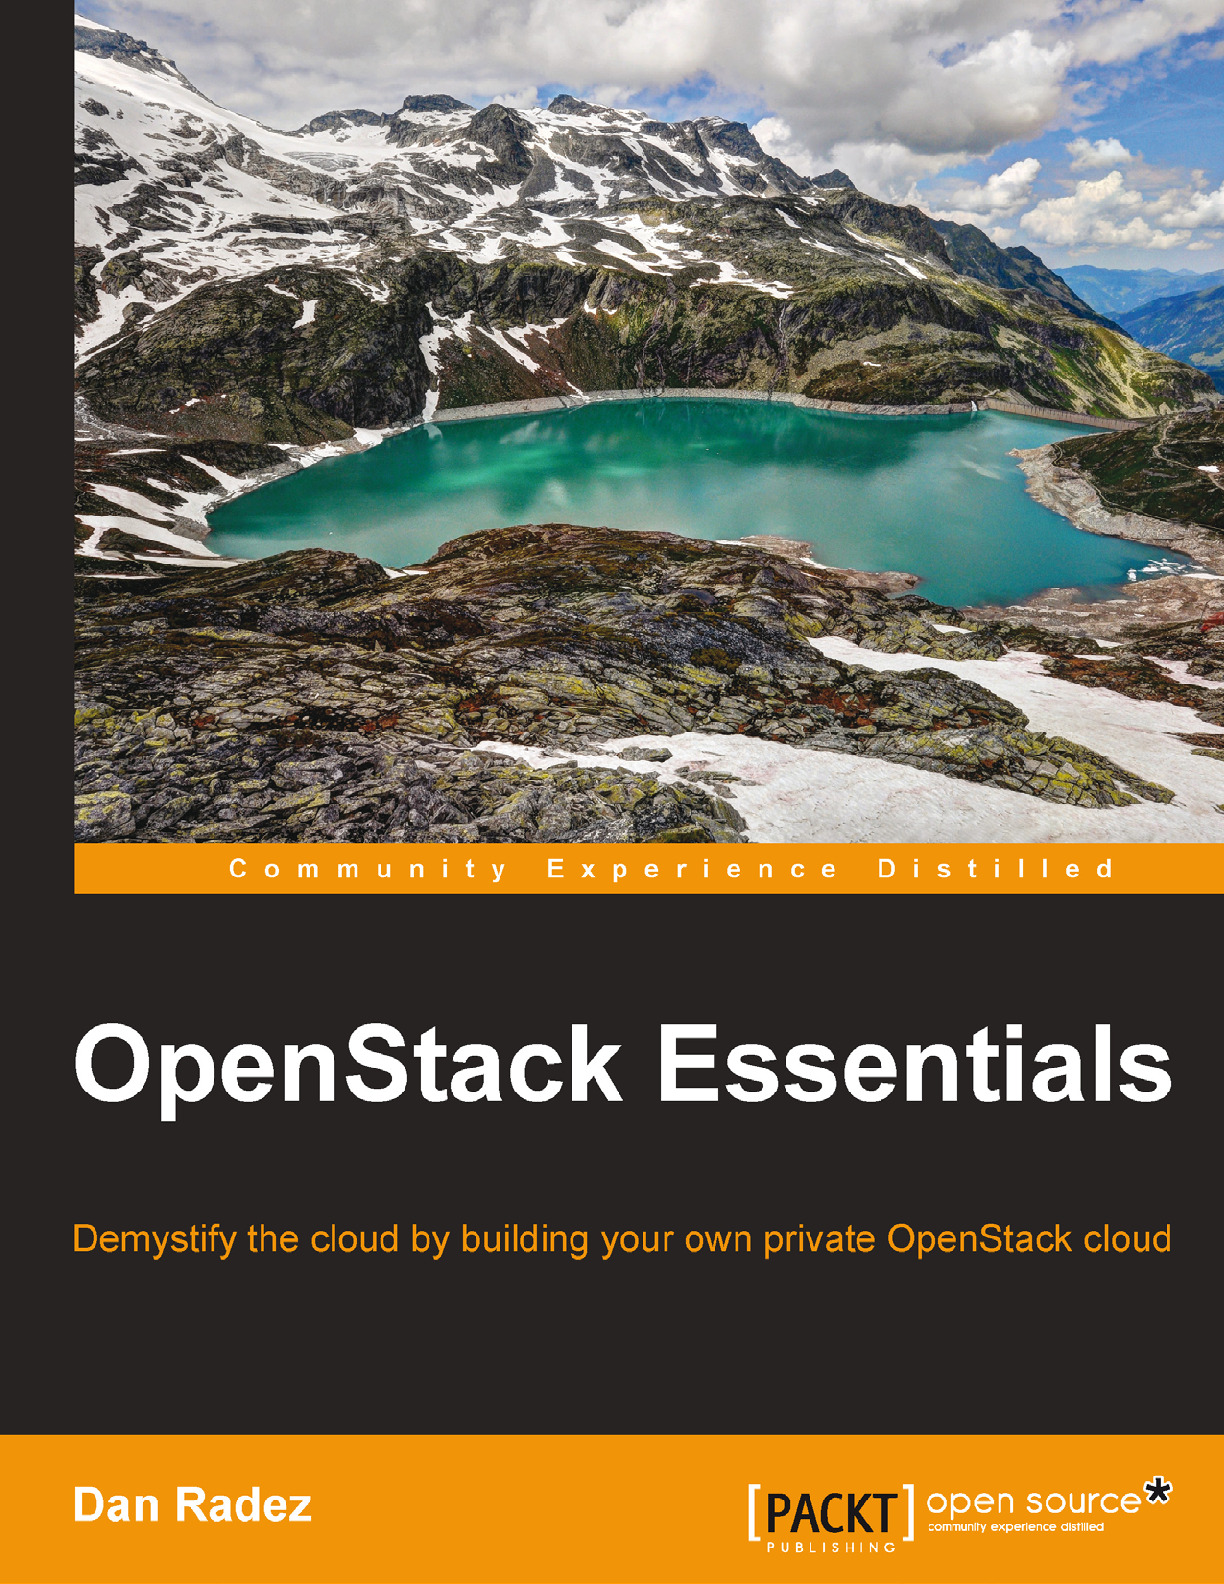 3.OpenStack Essentials